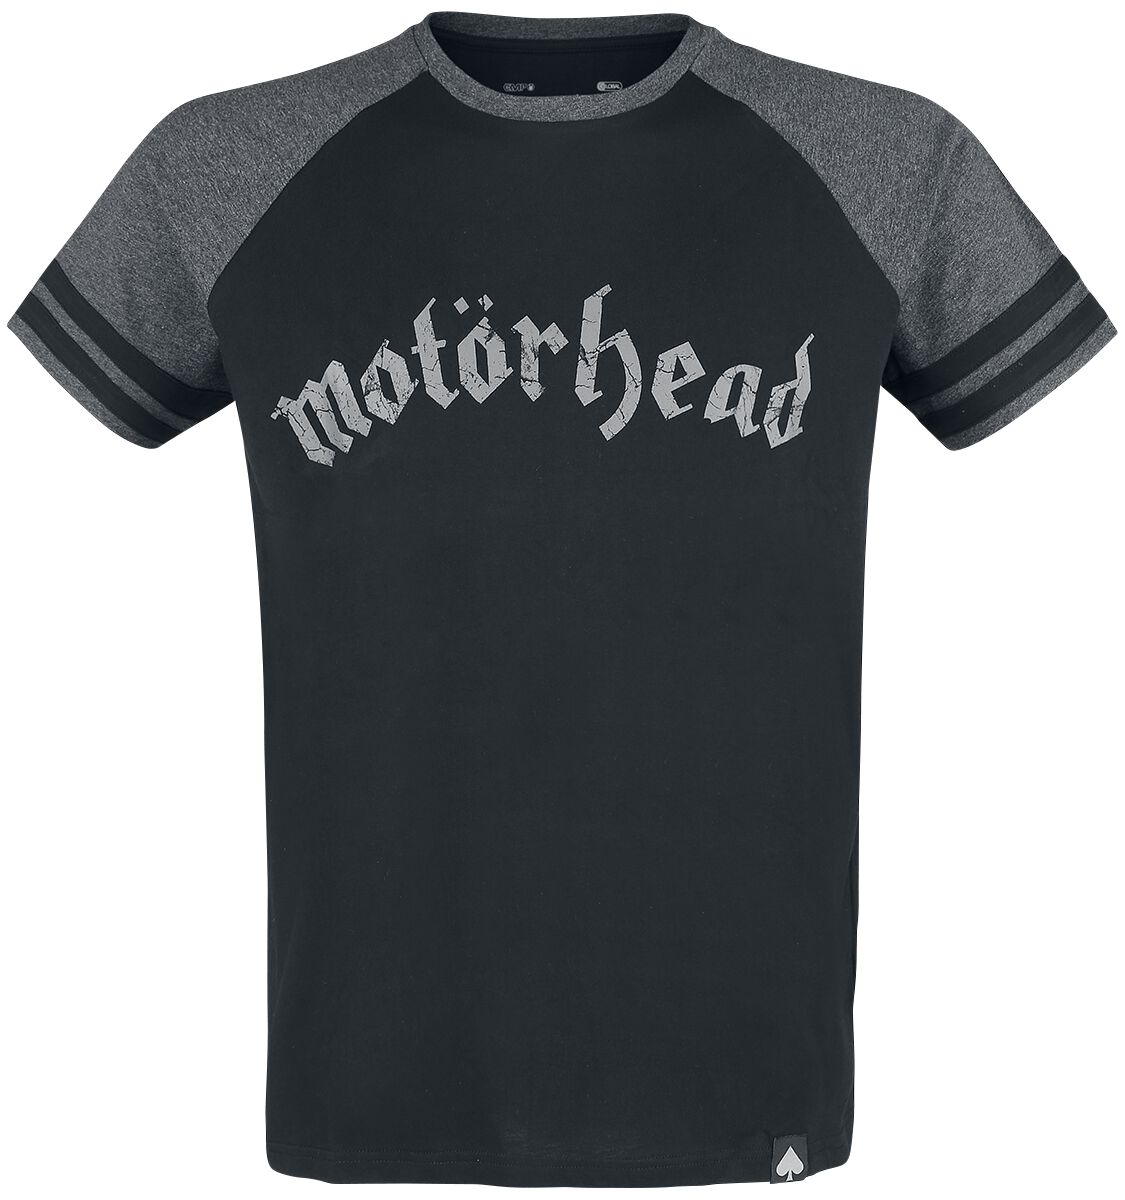 Motörhead T-Shirt - EMP Signature Collection - S bis 5XL - für Männer - Größe XXL - schwarz/grau meliert  - EMP exklusives Merchandise!